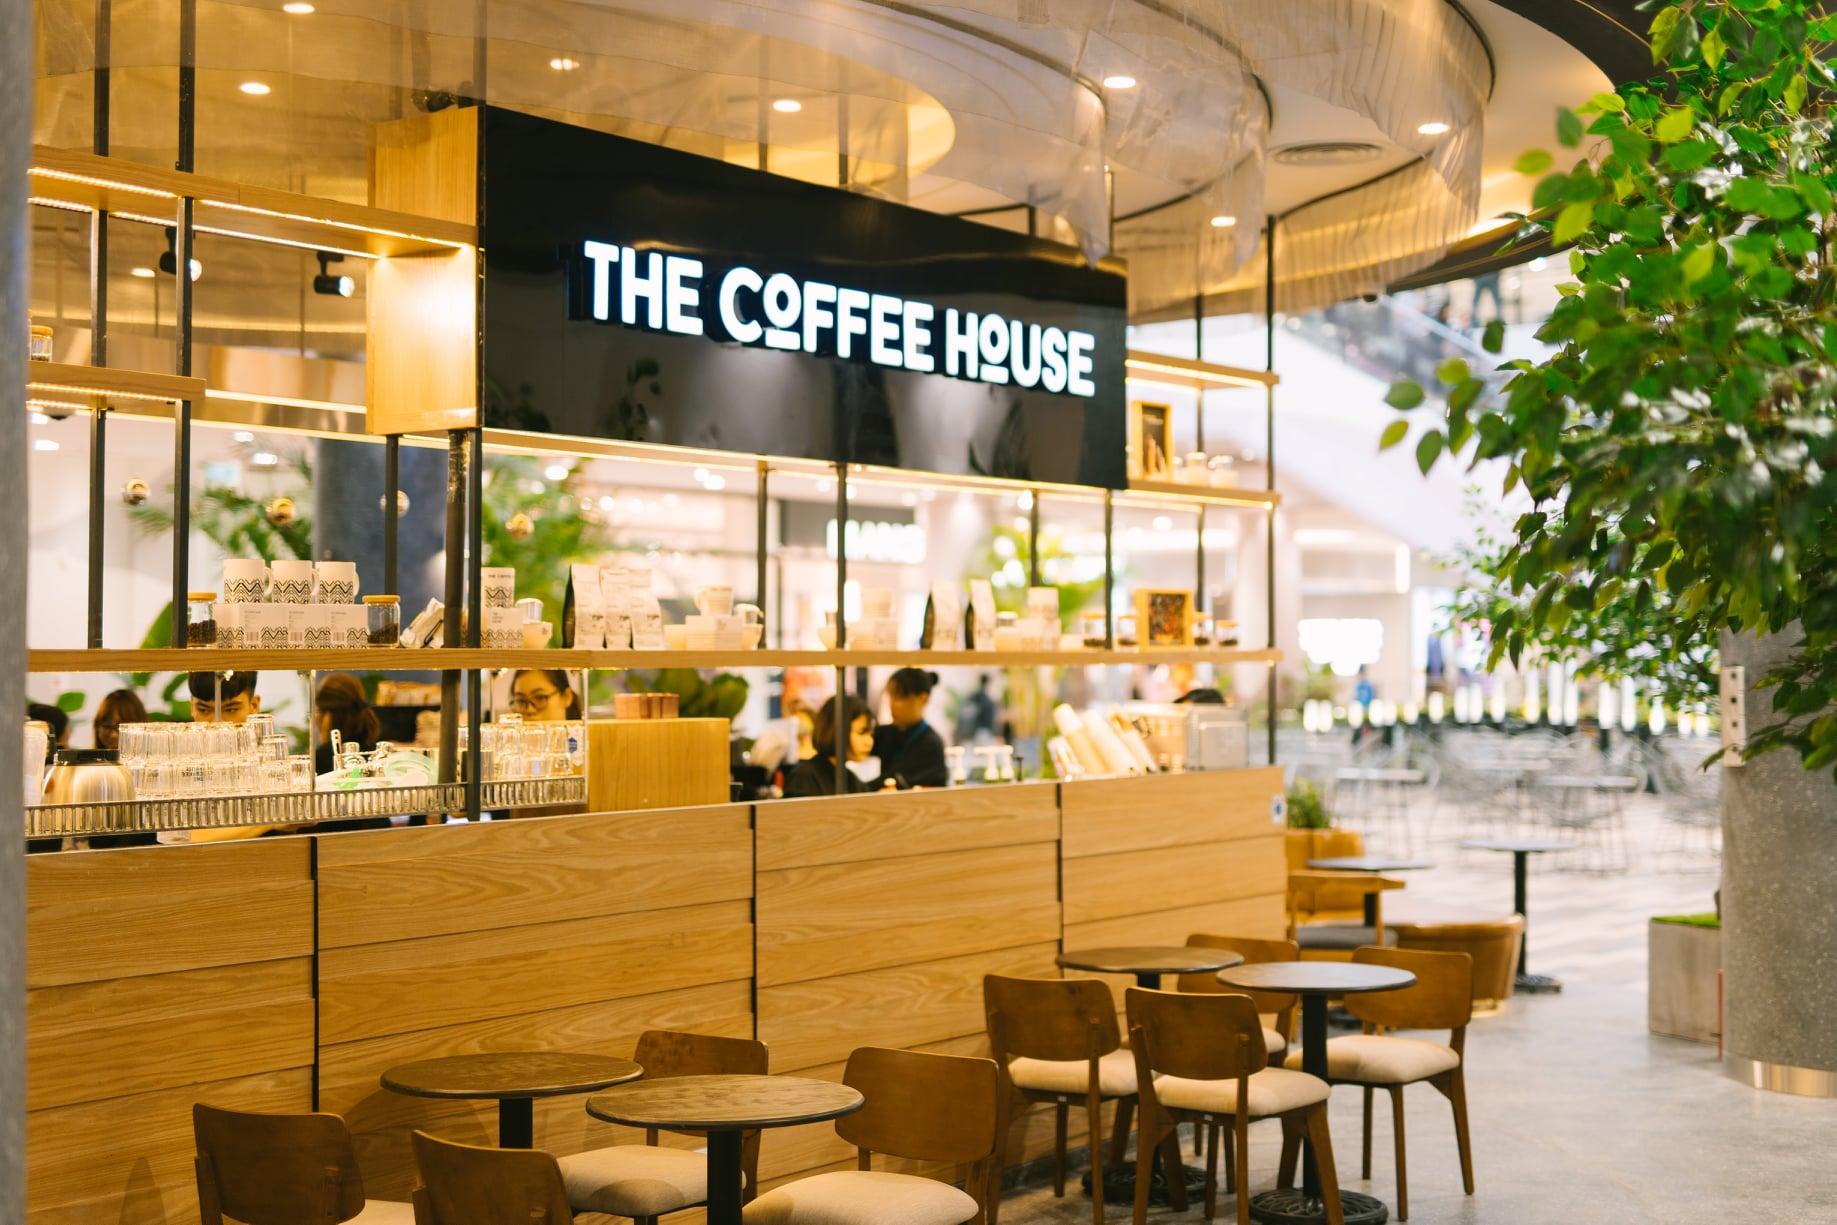 The Coffee House – Chuỗi cửa hàng cà phê được giới trẻ yêu thích ...